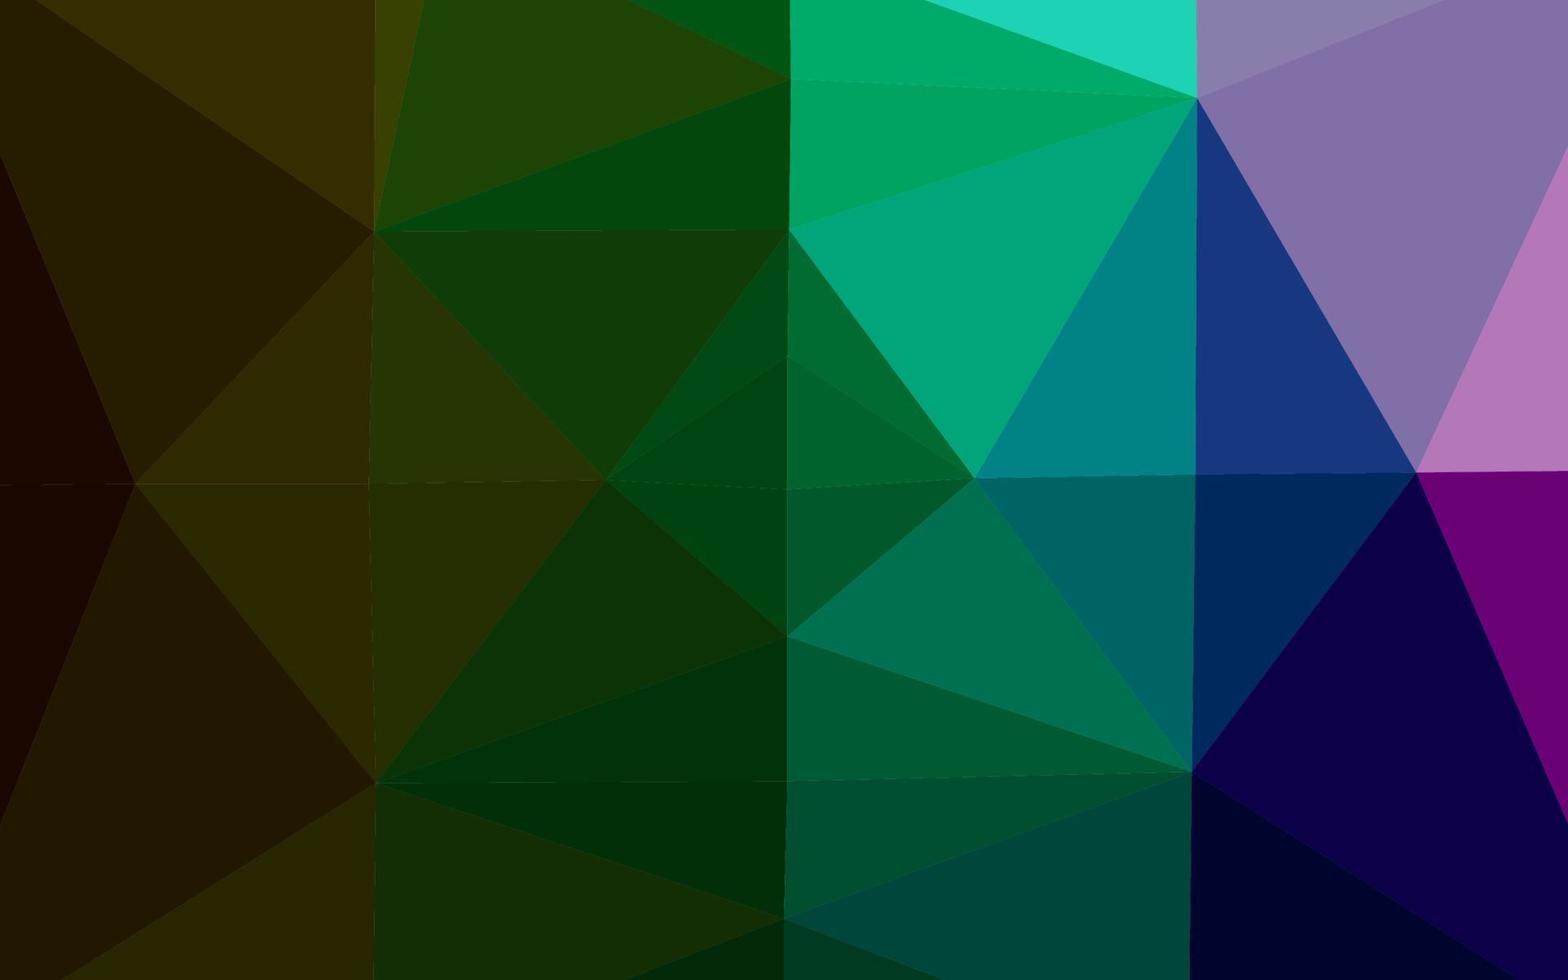 multicolore scuro, struttura del mosaico del triangolo di vettore dell'arcobaleno.